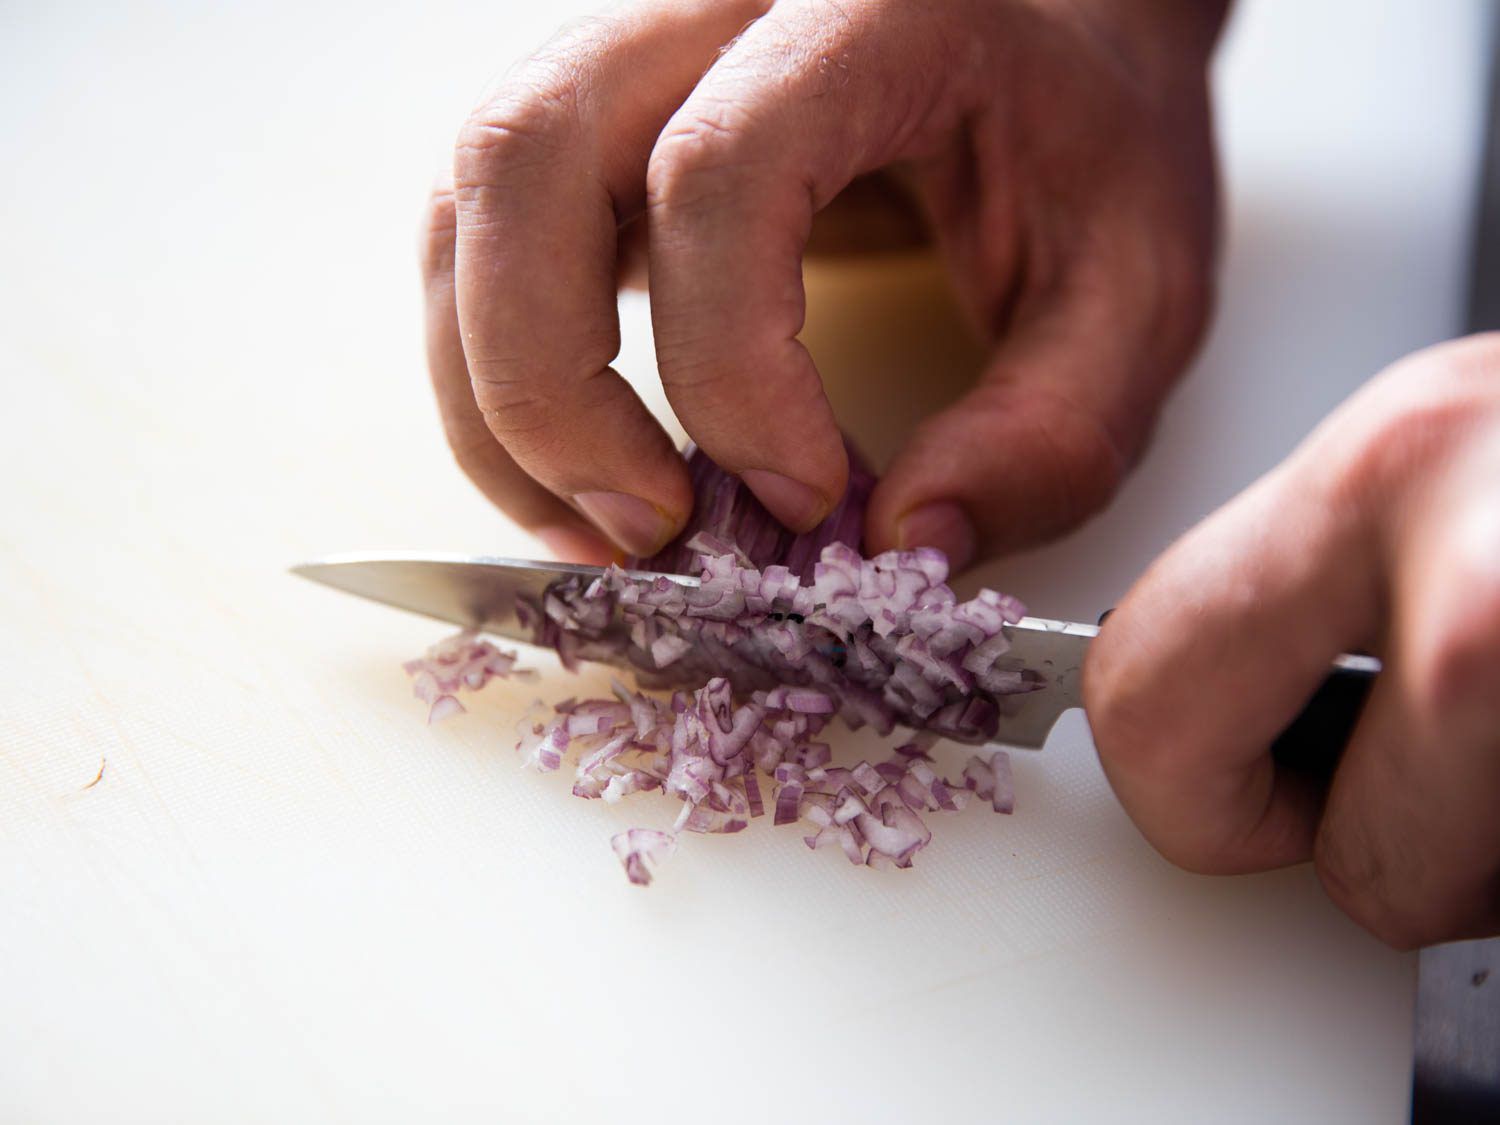 切葱的削皮刀。